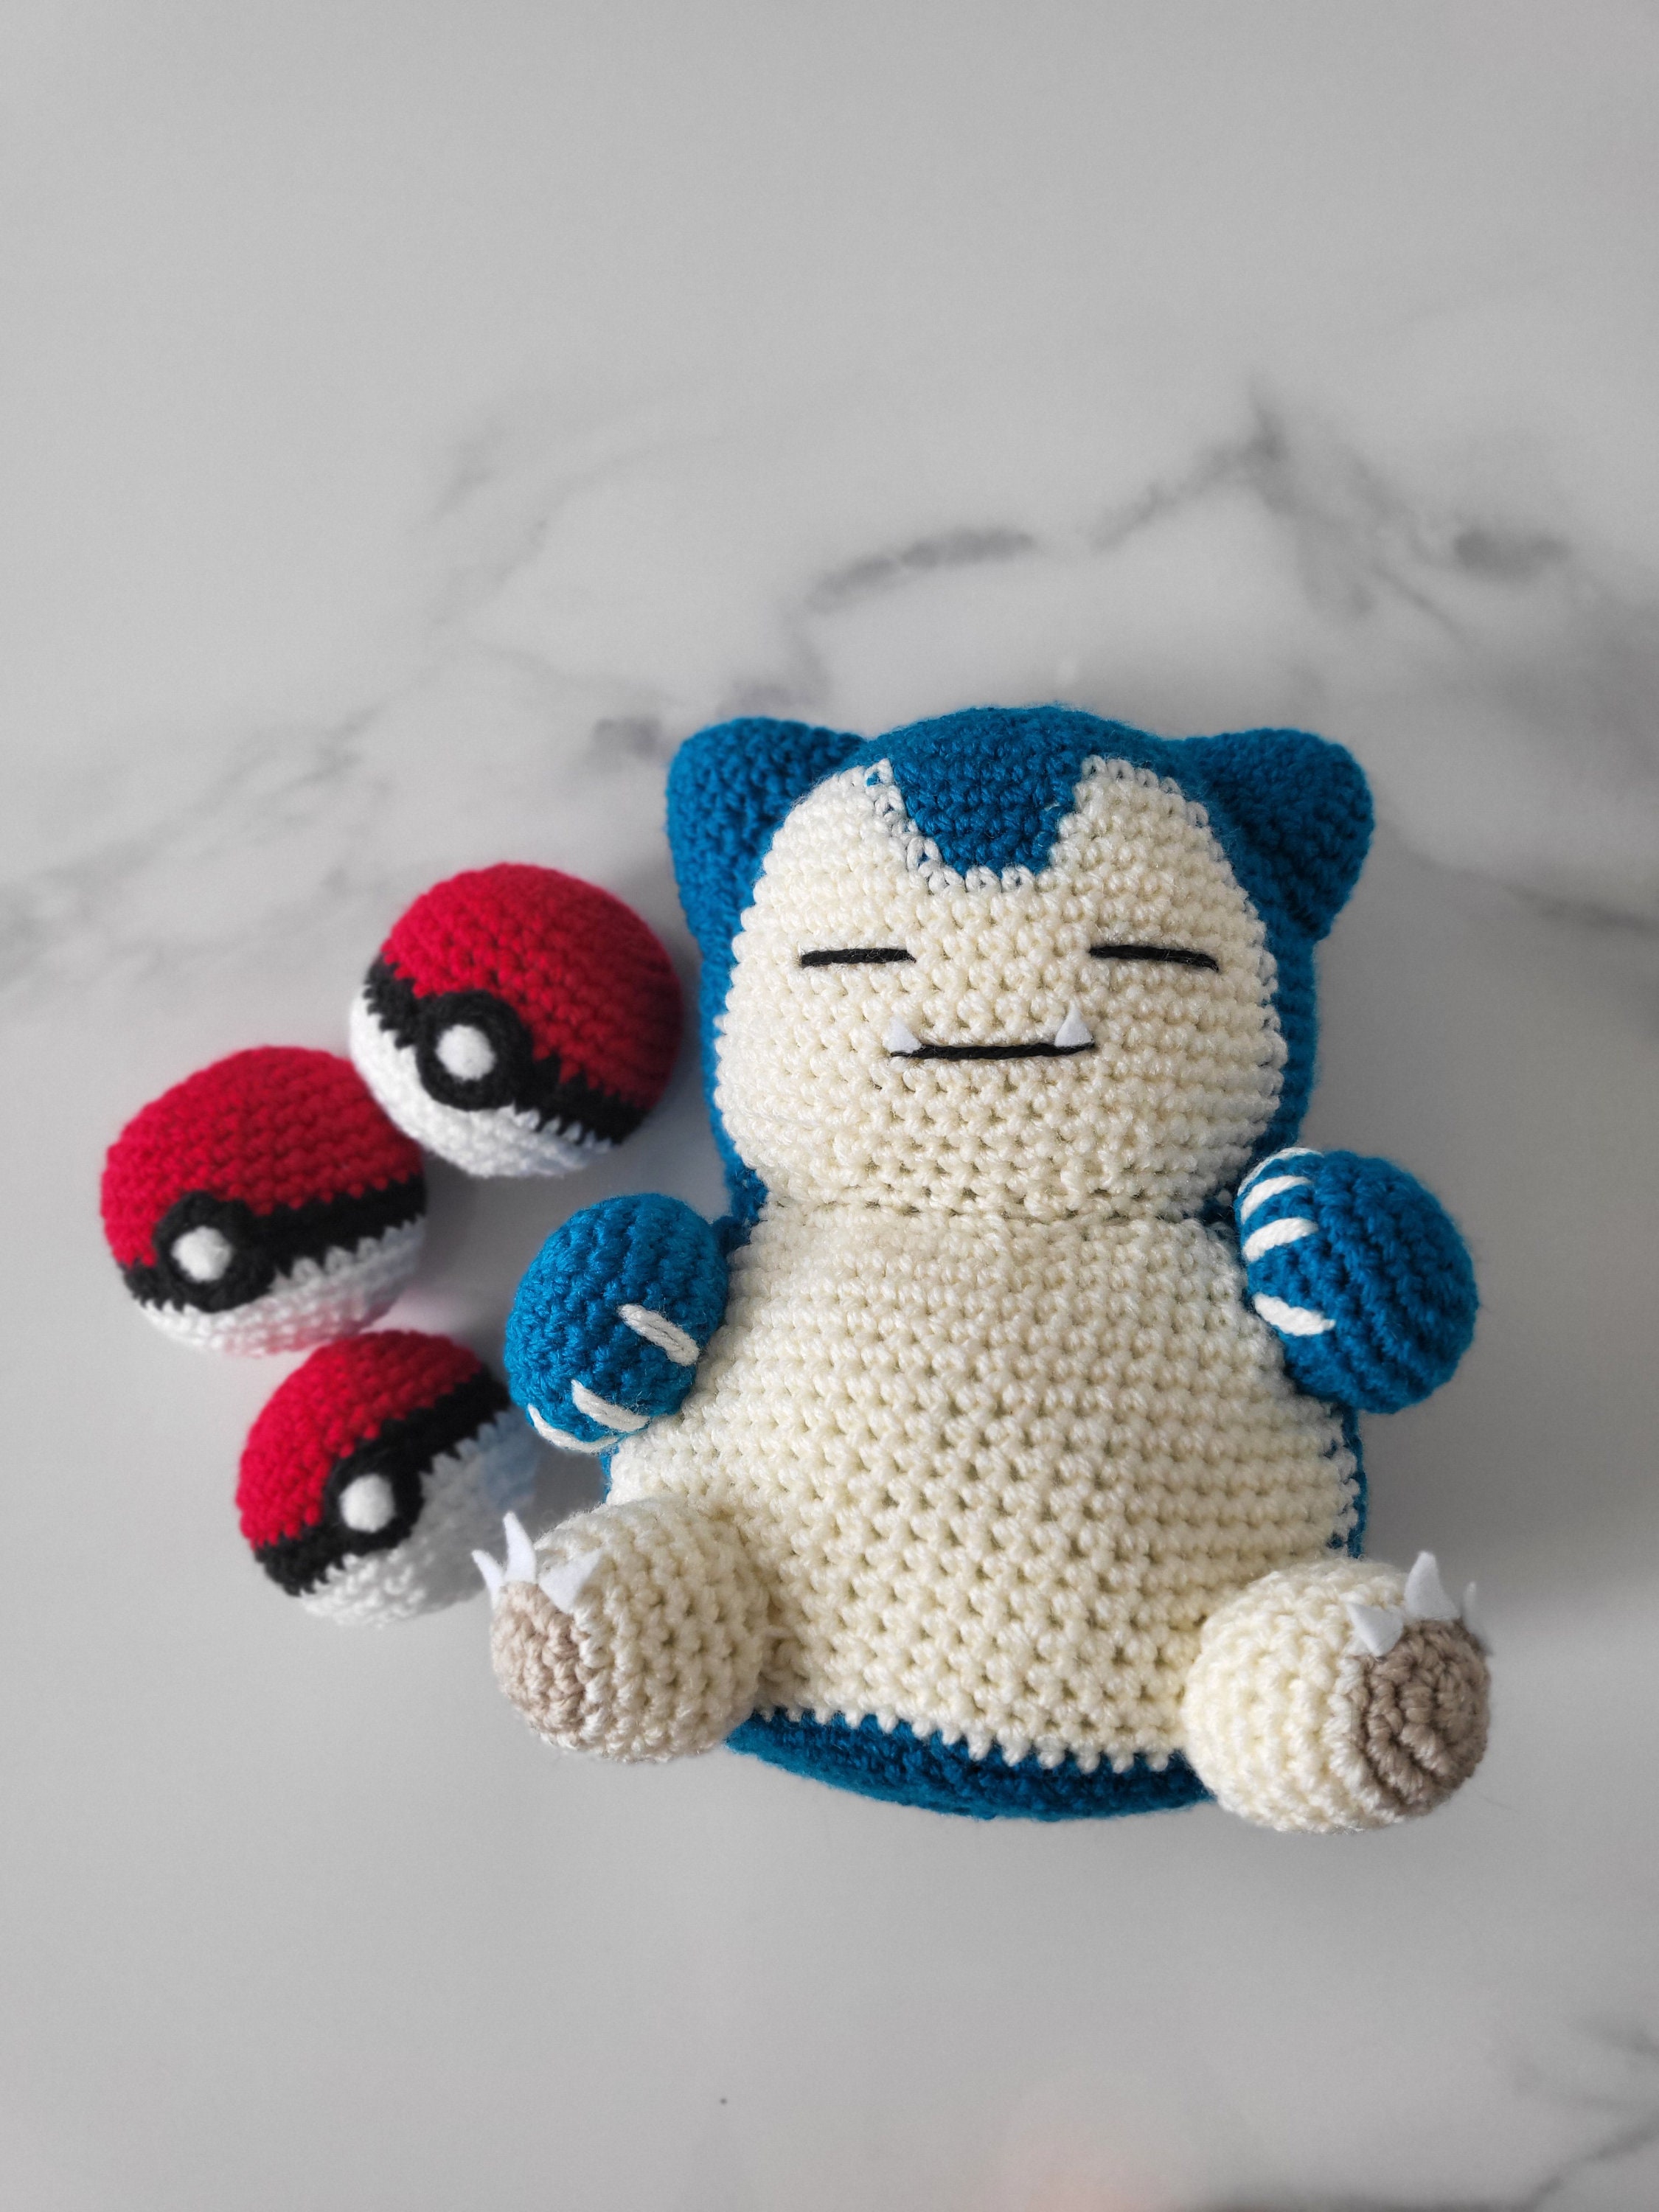 Amigurumi Pokemon Snorlax toy crochet pattern - Inspire Uplift